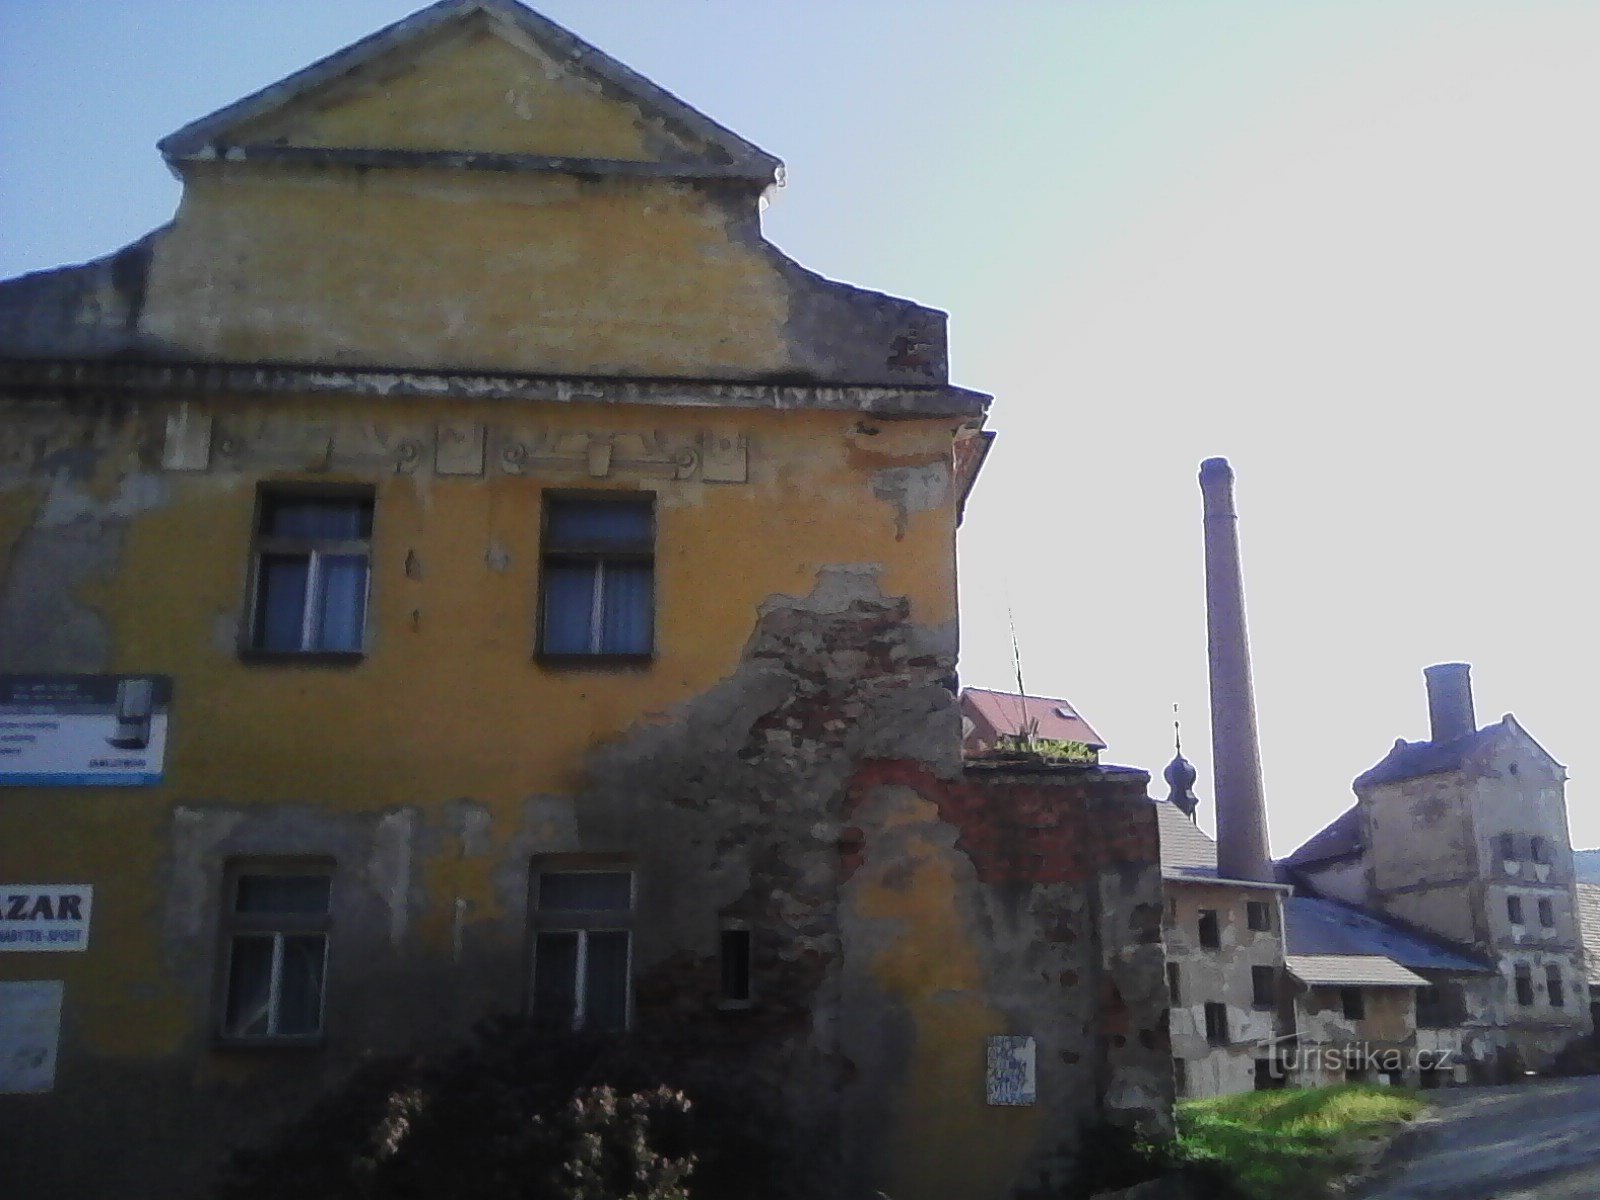 2. Το παλιό κάστρο της Votice. Φρούριο του 15ου αιώνα, που αναφέρεται για πρώτη φορά το 1542. Το κάστρο παραμένει